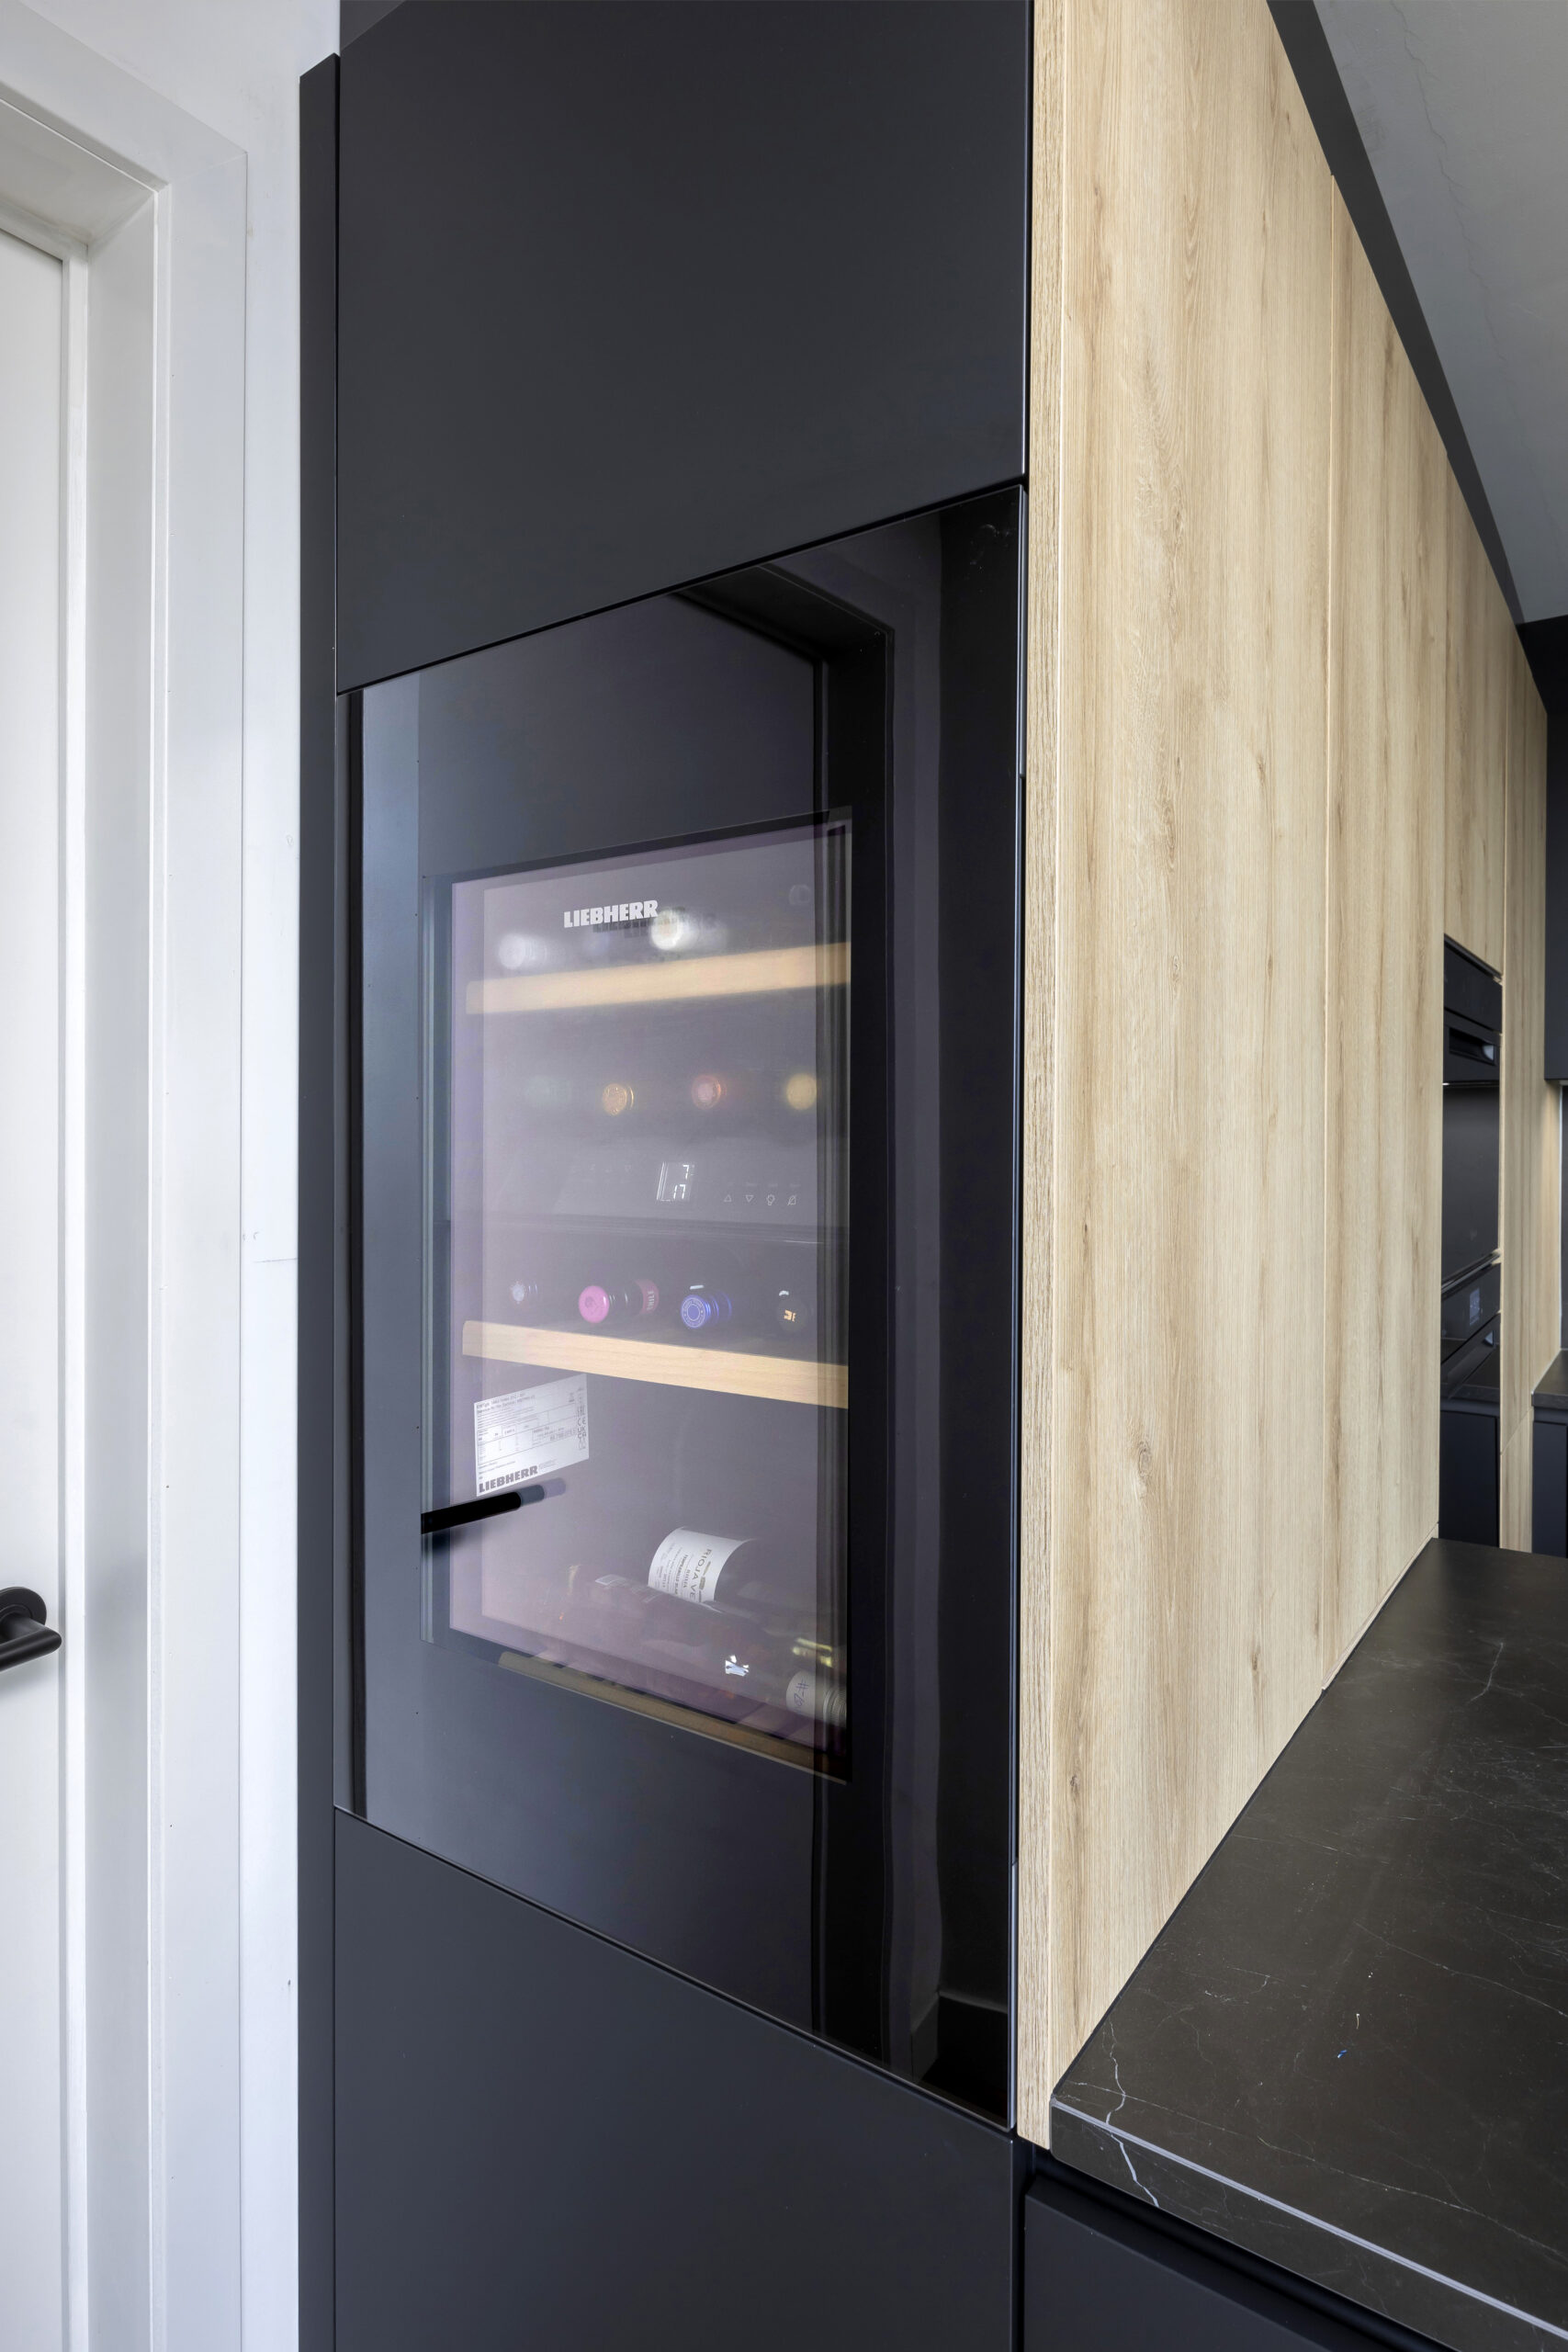 strakke zwarte moderne keuken met houttoets novy dampkap greeploos wijnkoeler liebher keramisch werkblad